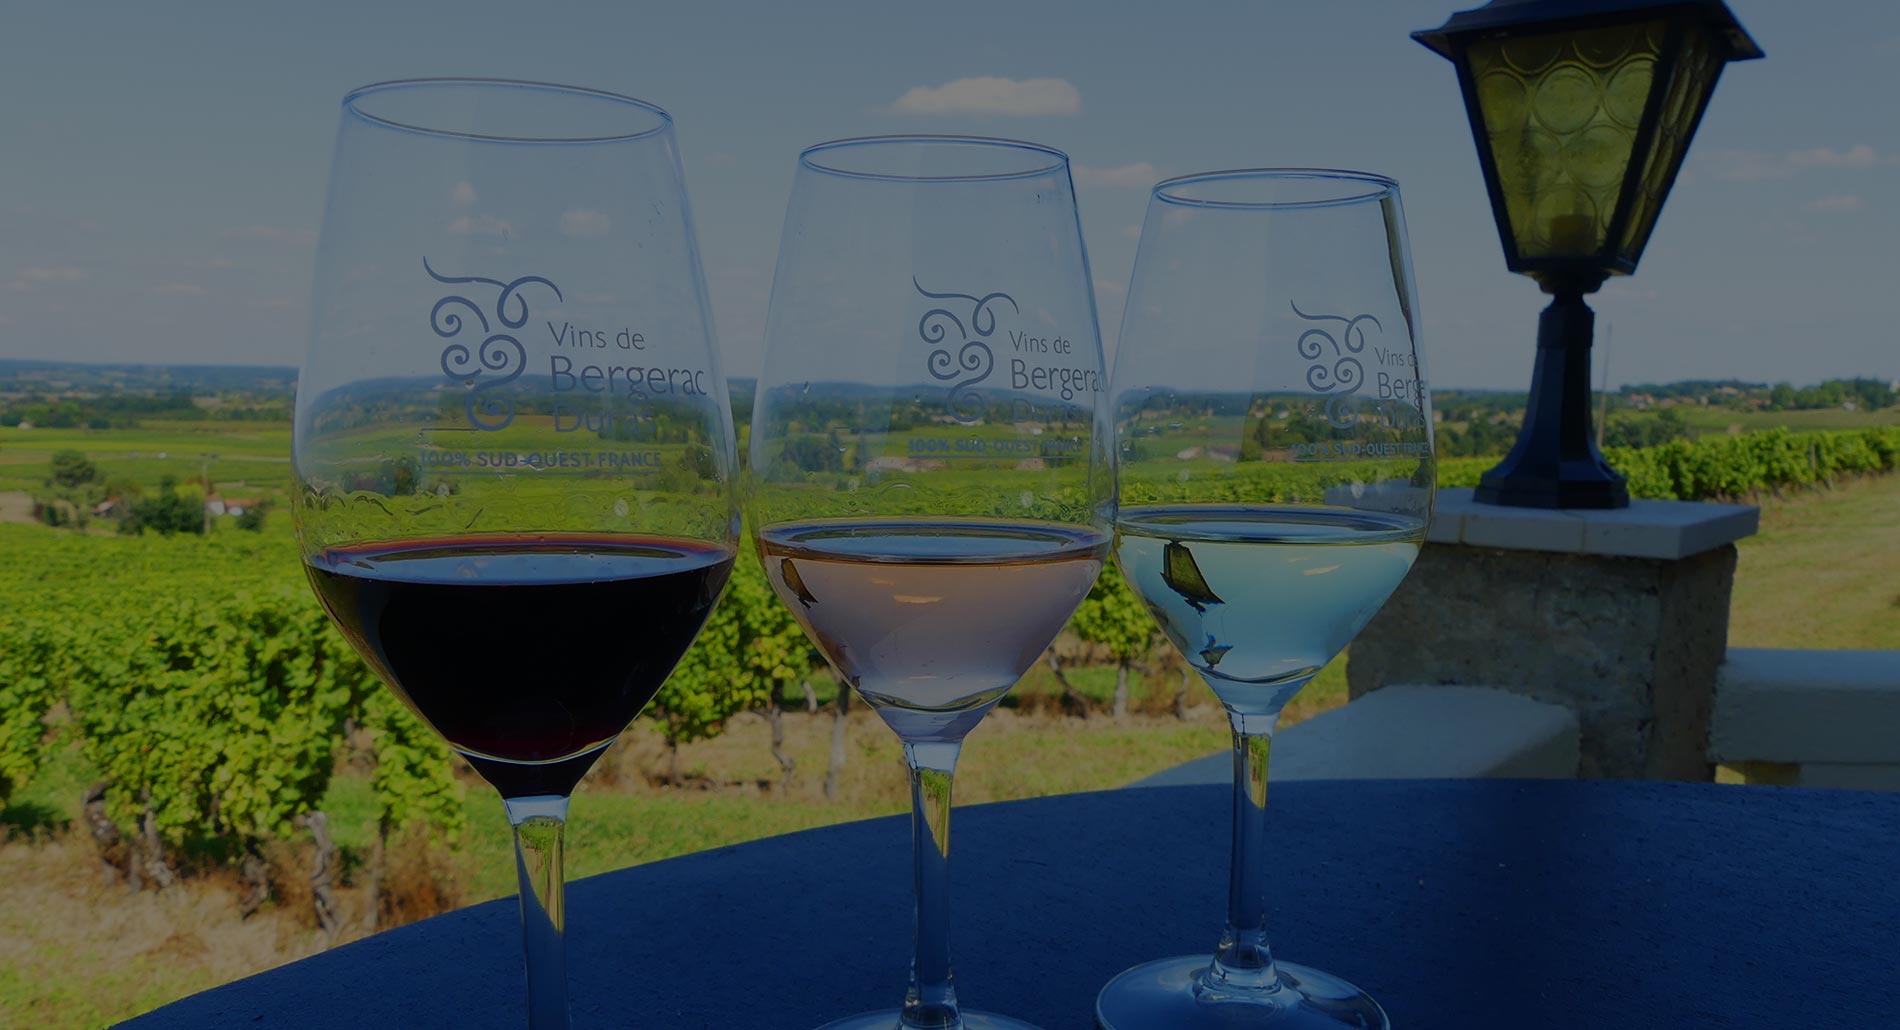 contactez les vignobles lajonie vente de vins Monbazillac et Bergerac en Dordogne